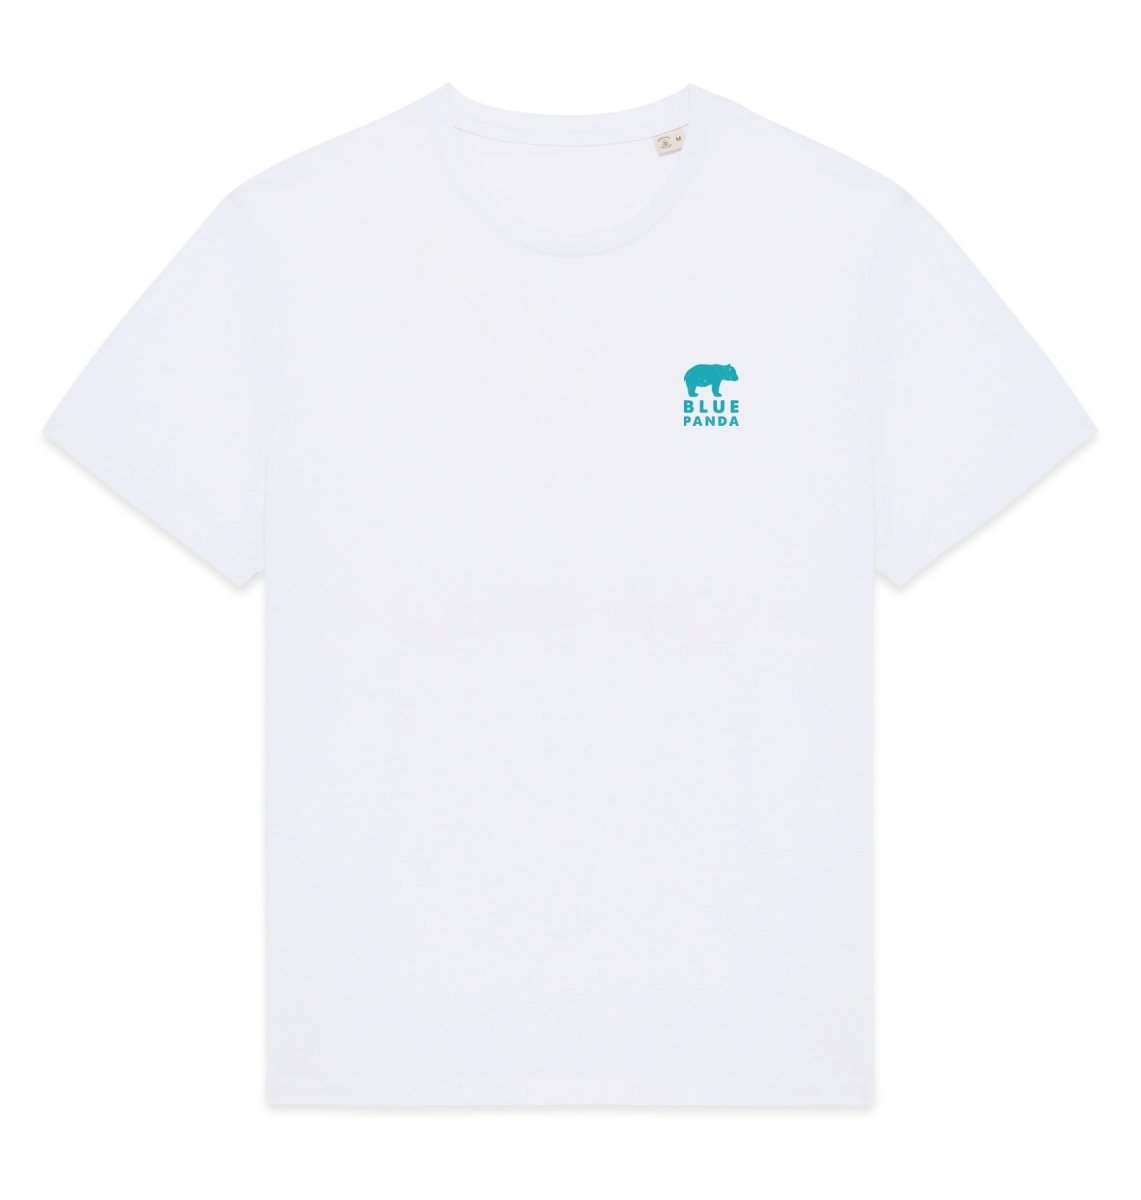 Orca Mens T-shirt - Blue Panda